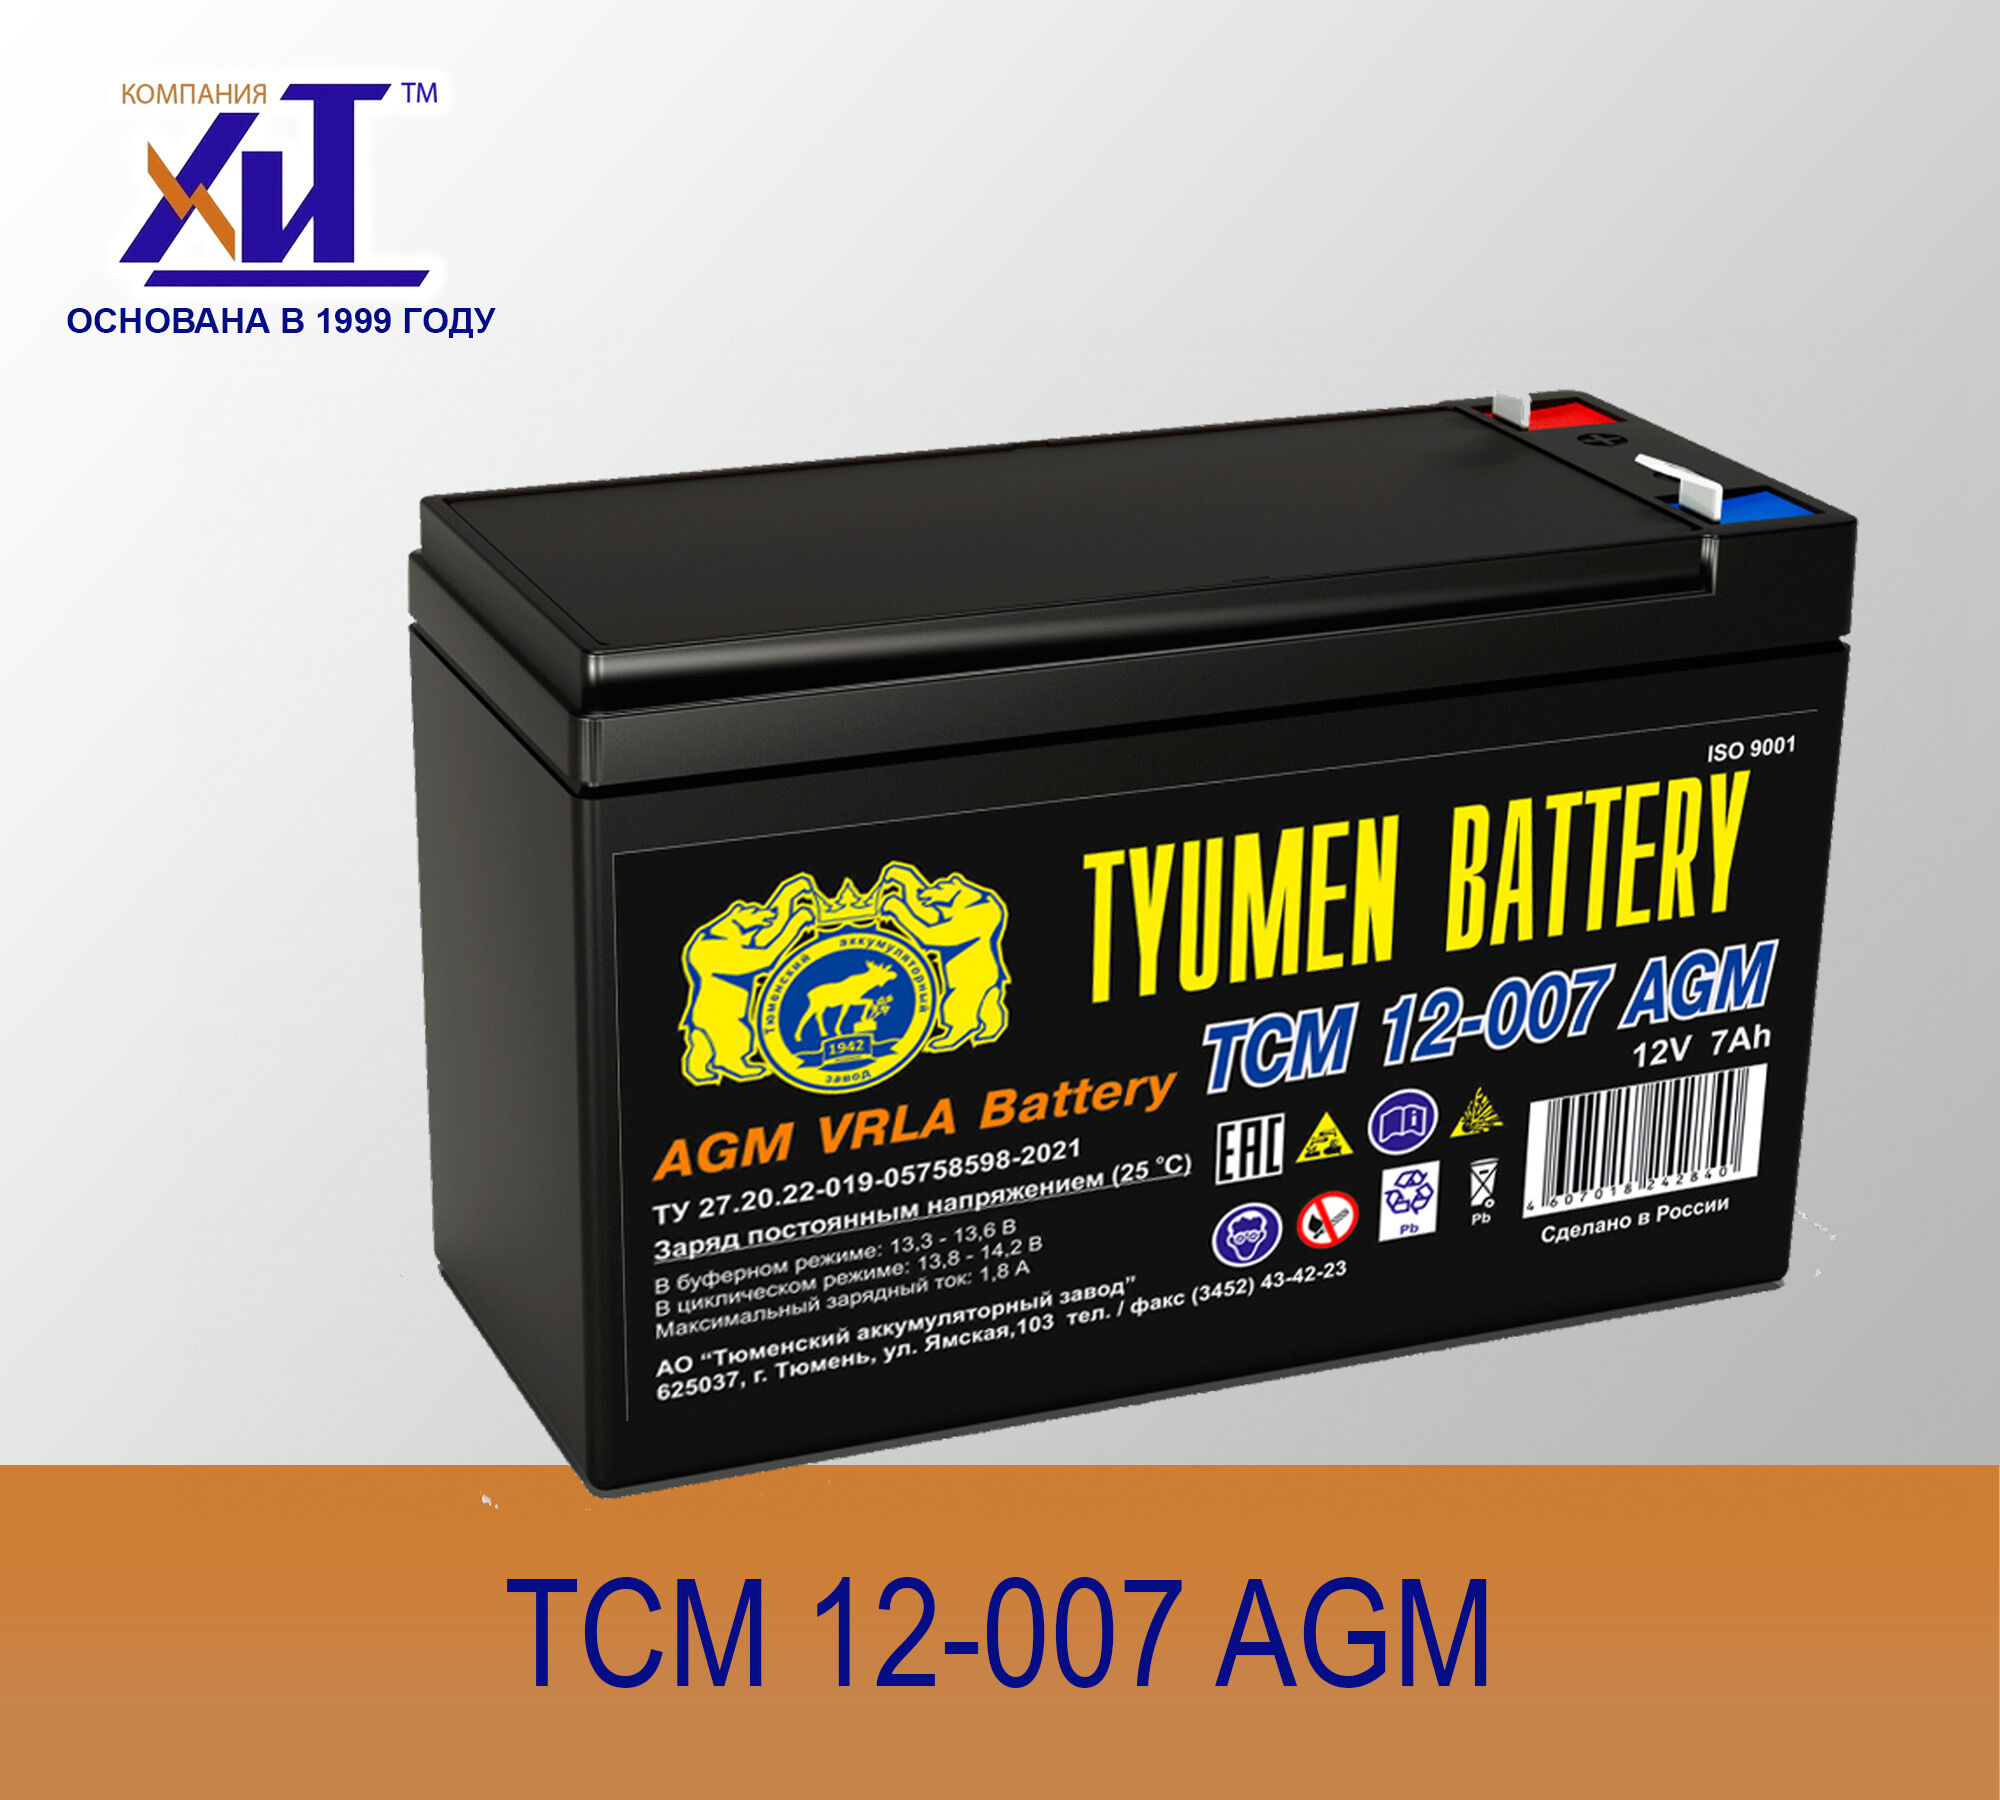 Стационарная свинцово-кислотная моноблочная батарея ТСМ 12-007 AGM